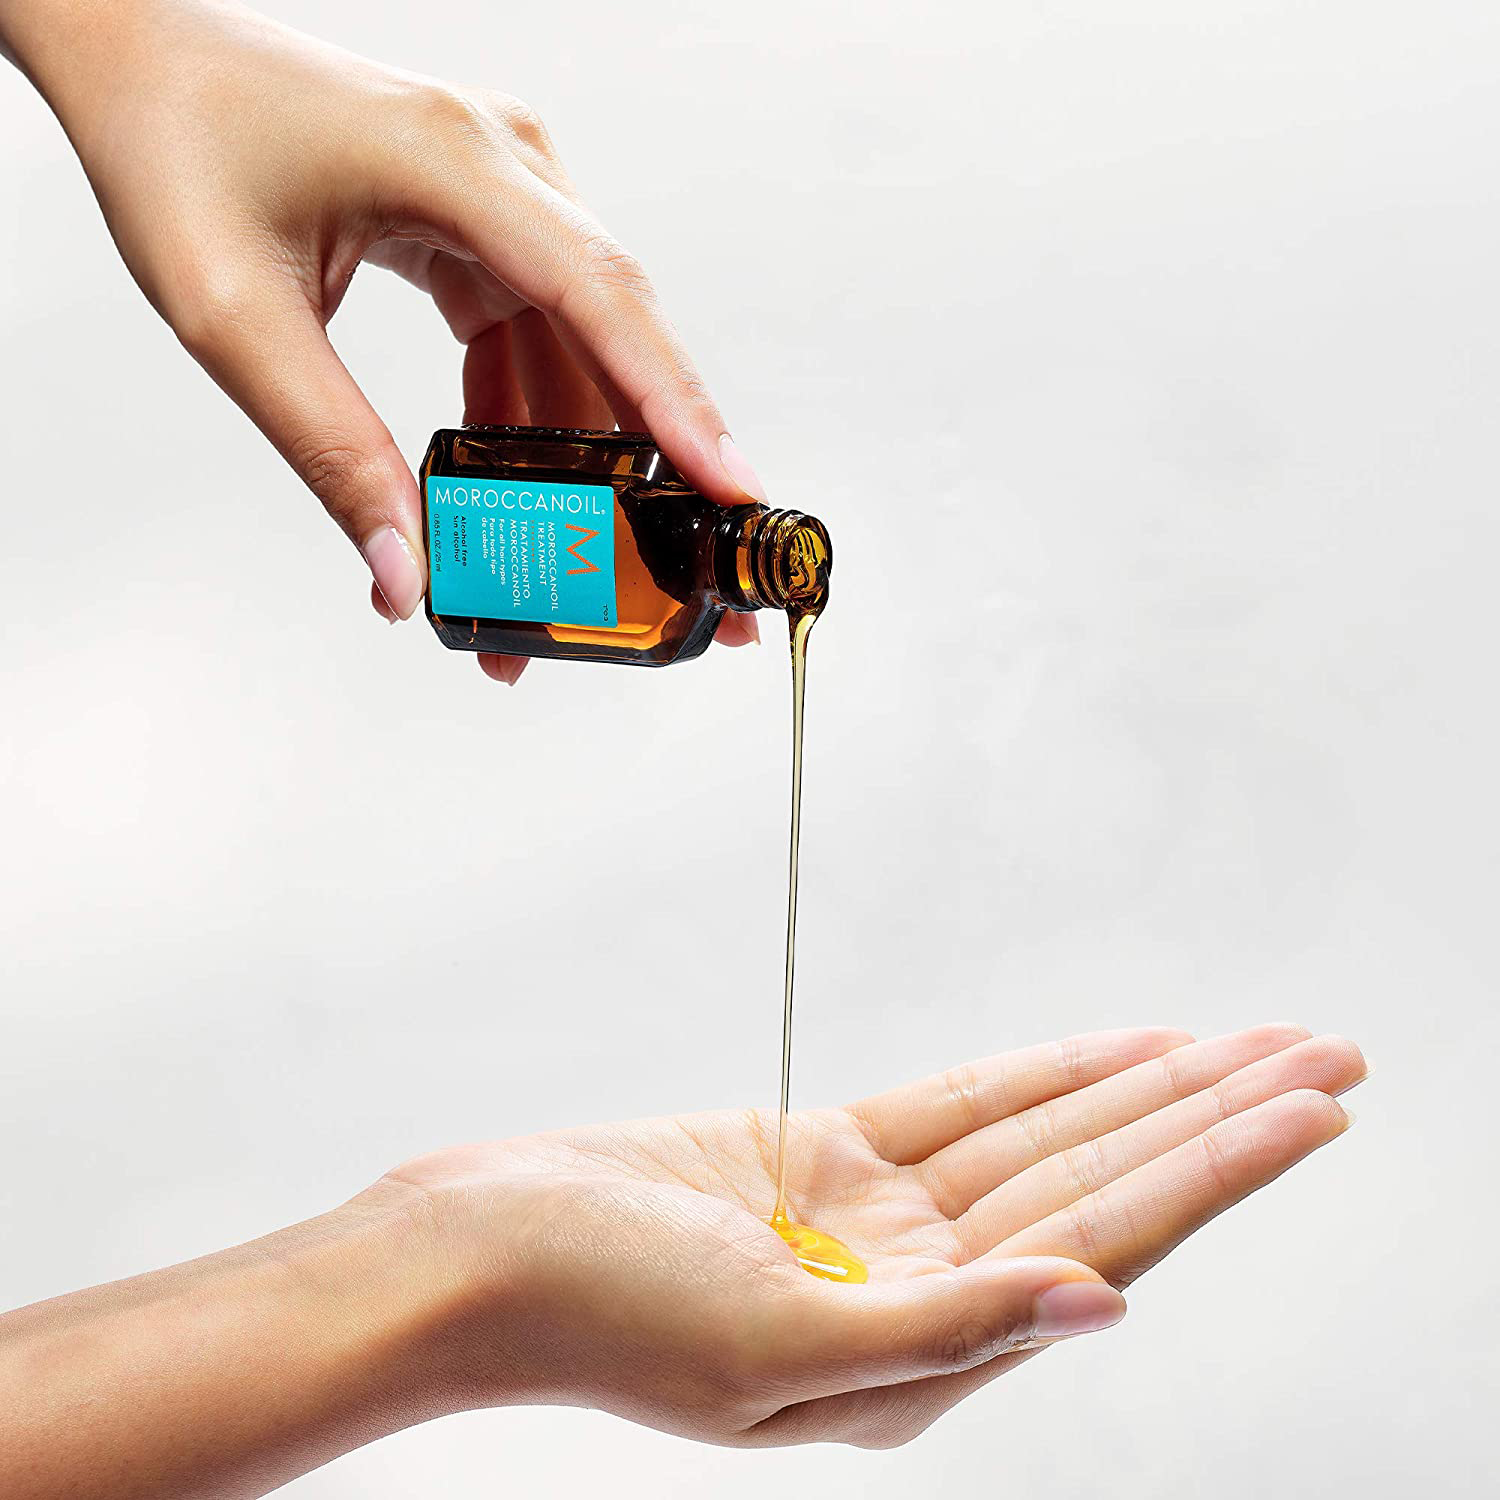 “Chất dầu dưỡng Moroccanoil có màu vàng trong dạng gel hơi lỏng giống như mật ong